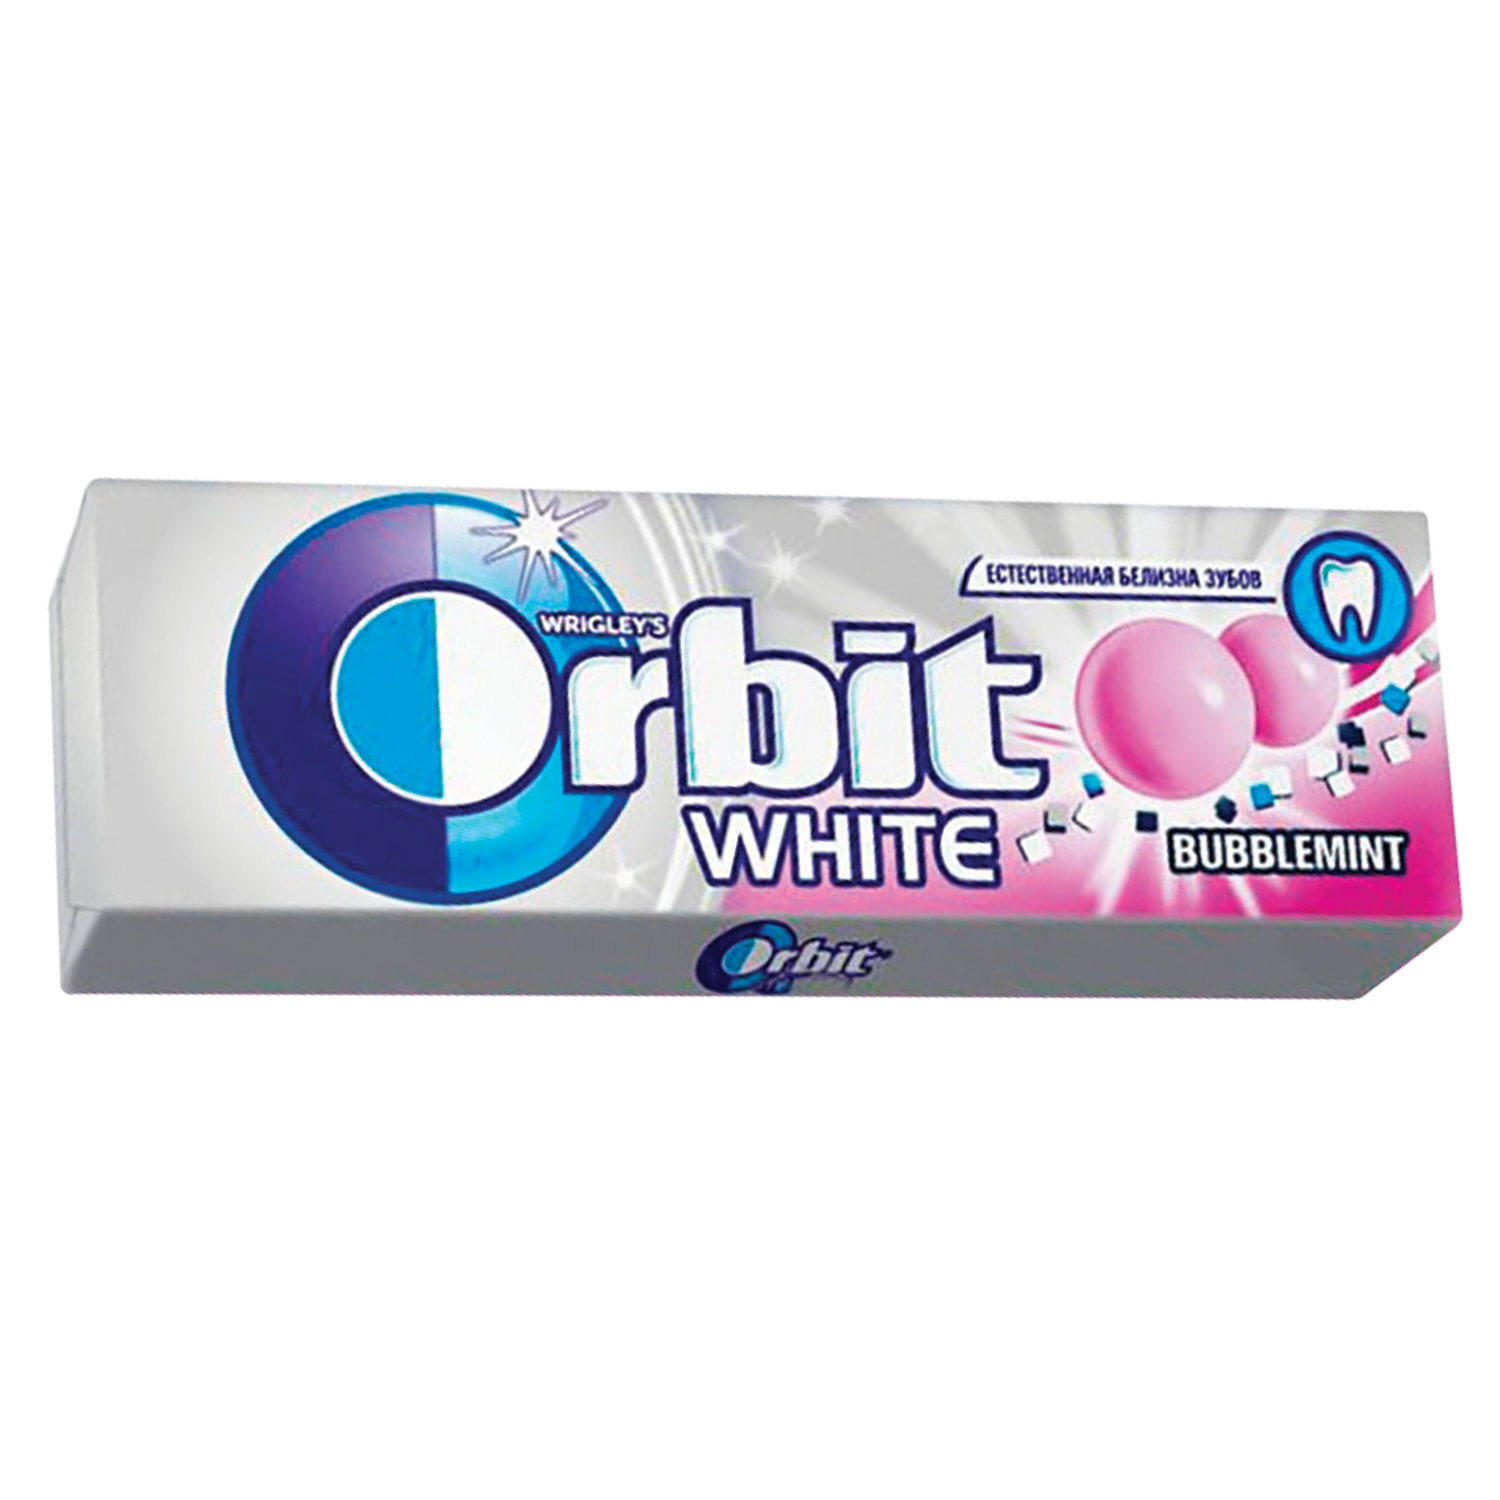 Жевательная резинка Orbit White Bubblemint, 13,6г. Резинка жевательная Orbit баблминт, 13.6г. Orbit жевательная резинка Bubblemint 13.6. Жев.резинка Orbit белоснежный Bubblemint 13,6г. Дж орбит